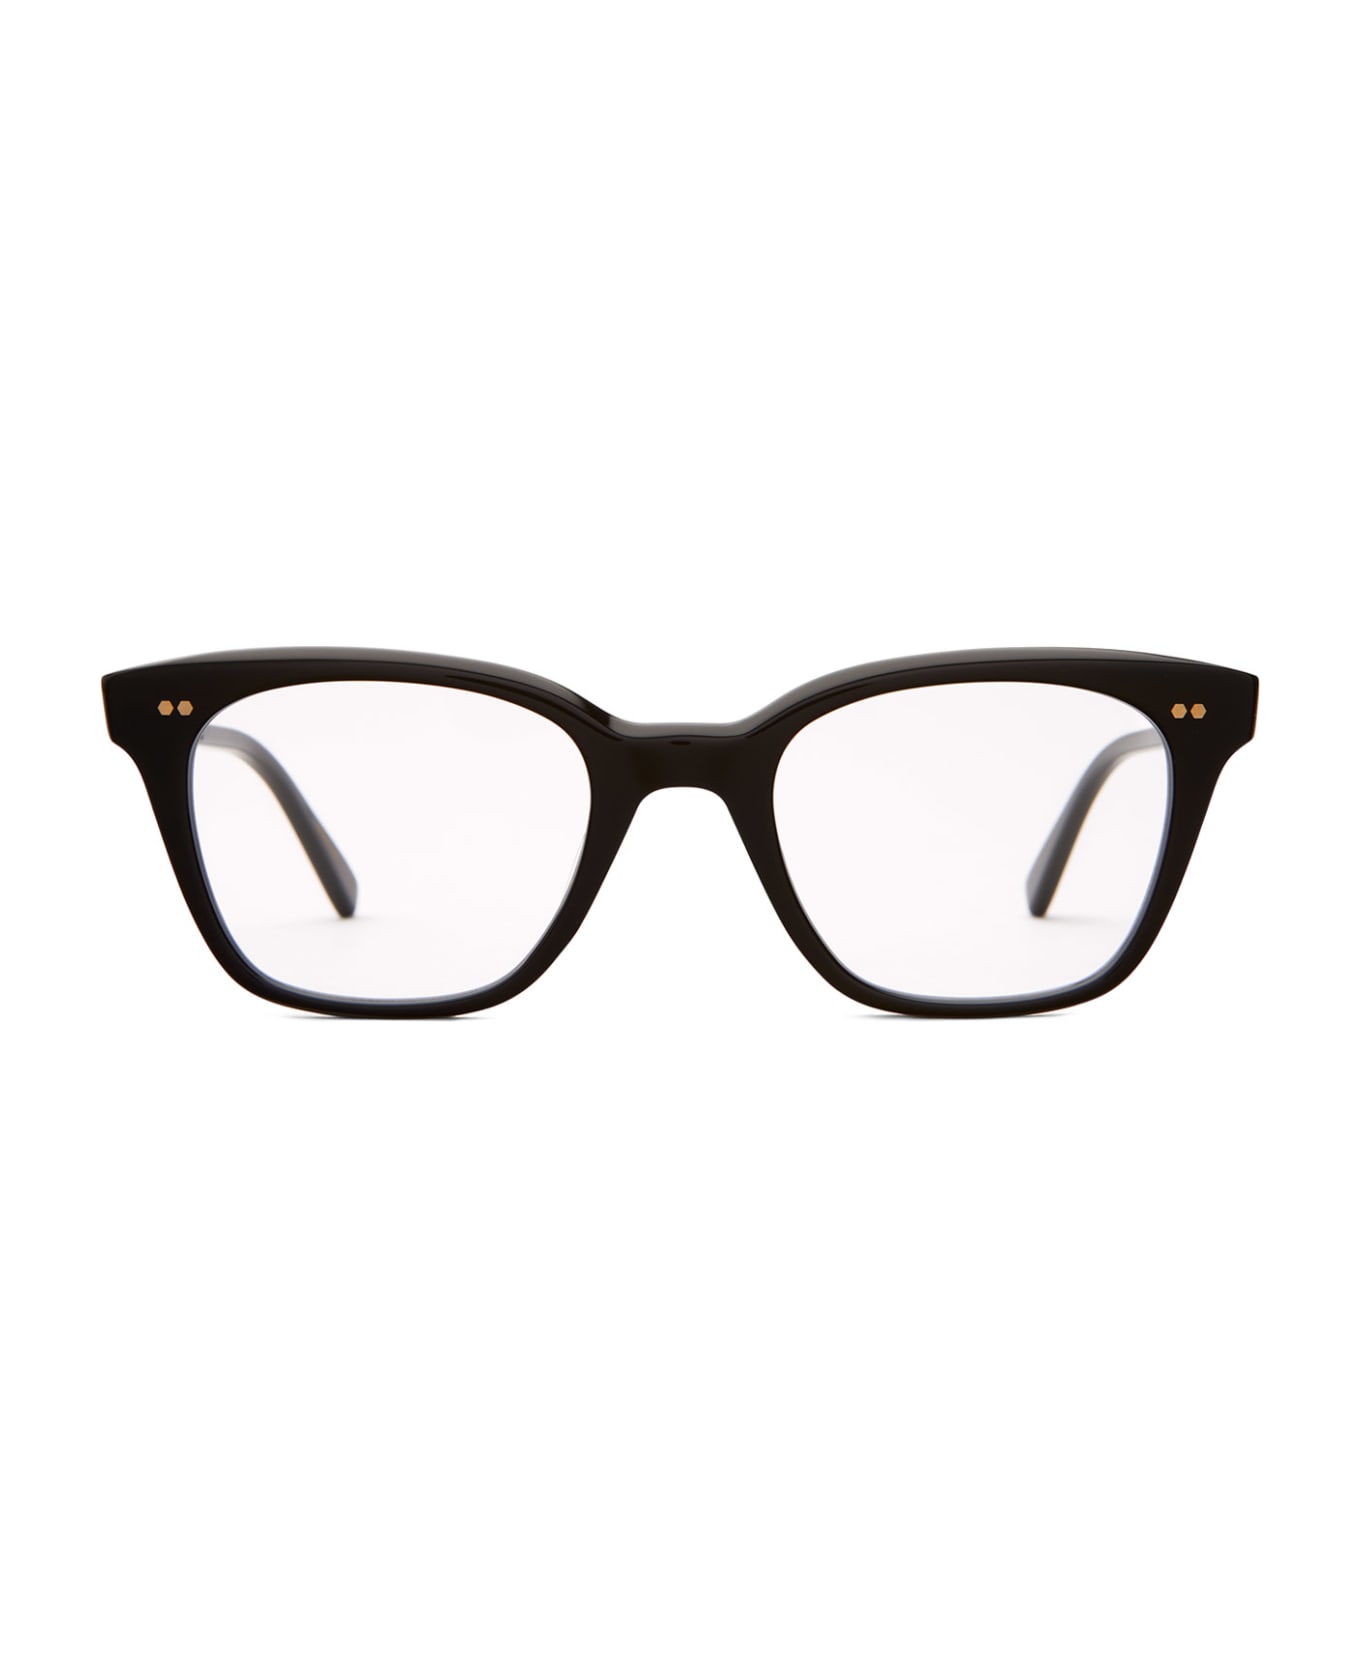 Mr. Leight Morgan C Black-12k White Gold Glasses - Black-12K White Gold